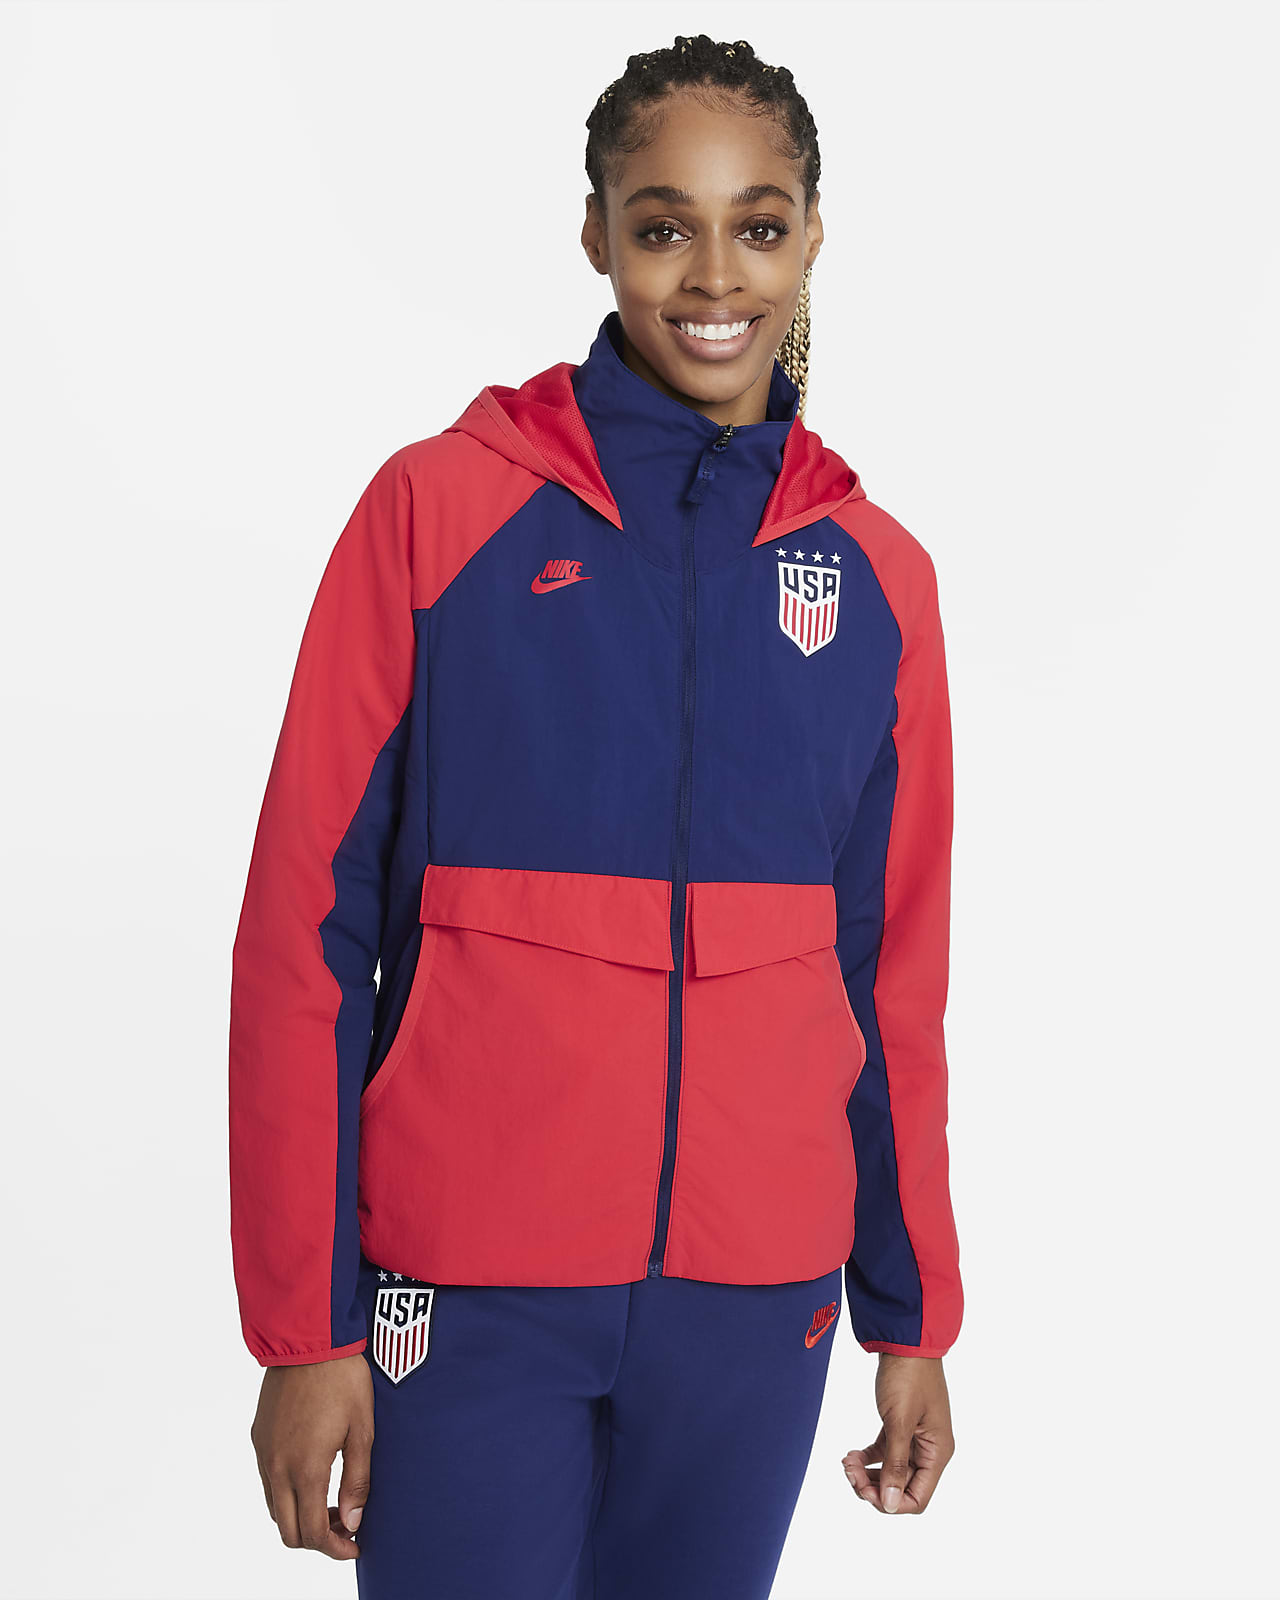 U.S. AWF Women's Soccer Jacket